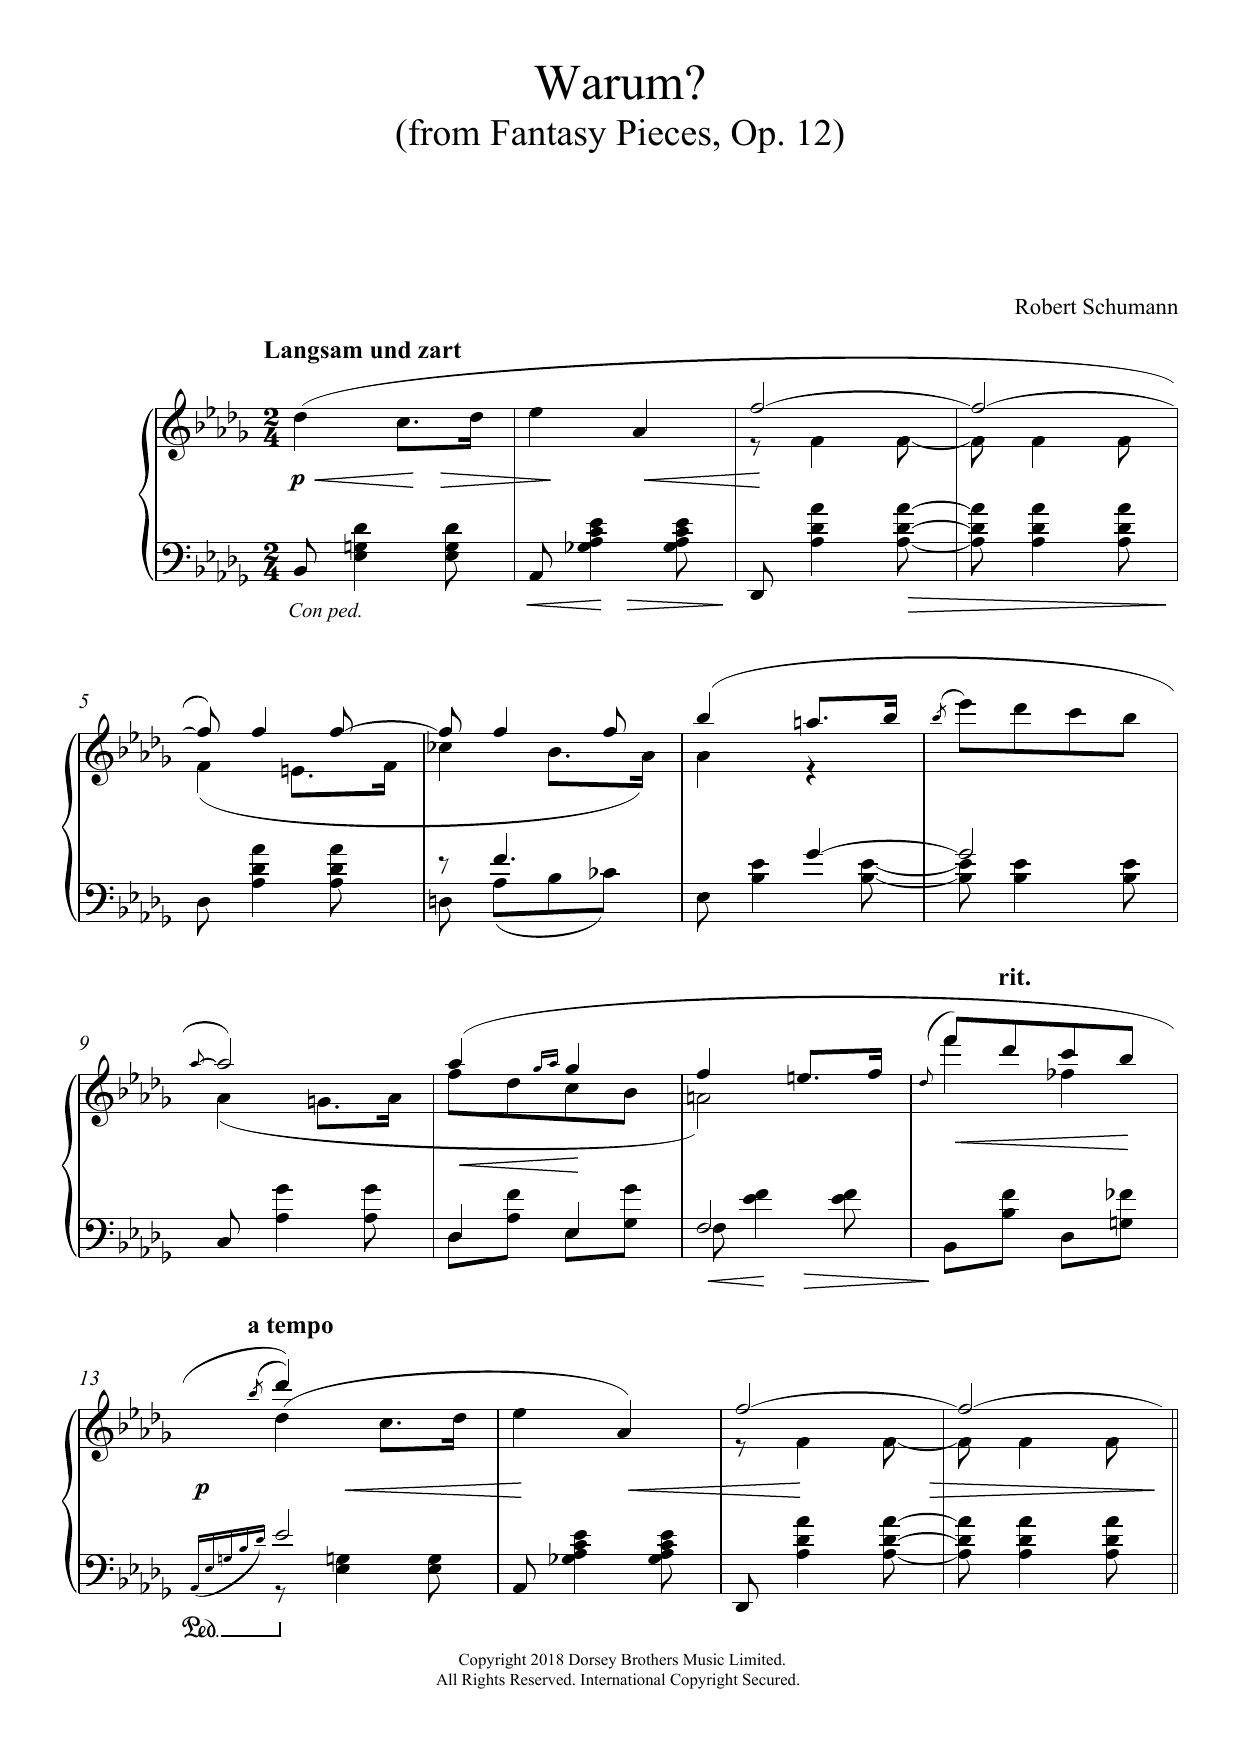 Download Robert Schumann Warum? (From Fantasy Pieces Op. 12) Sheet Music